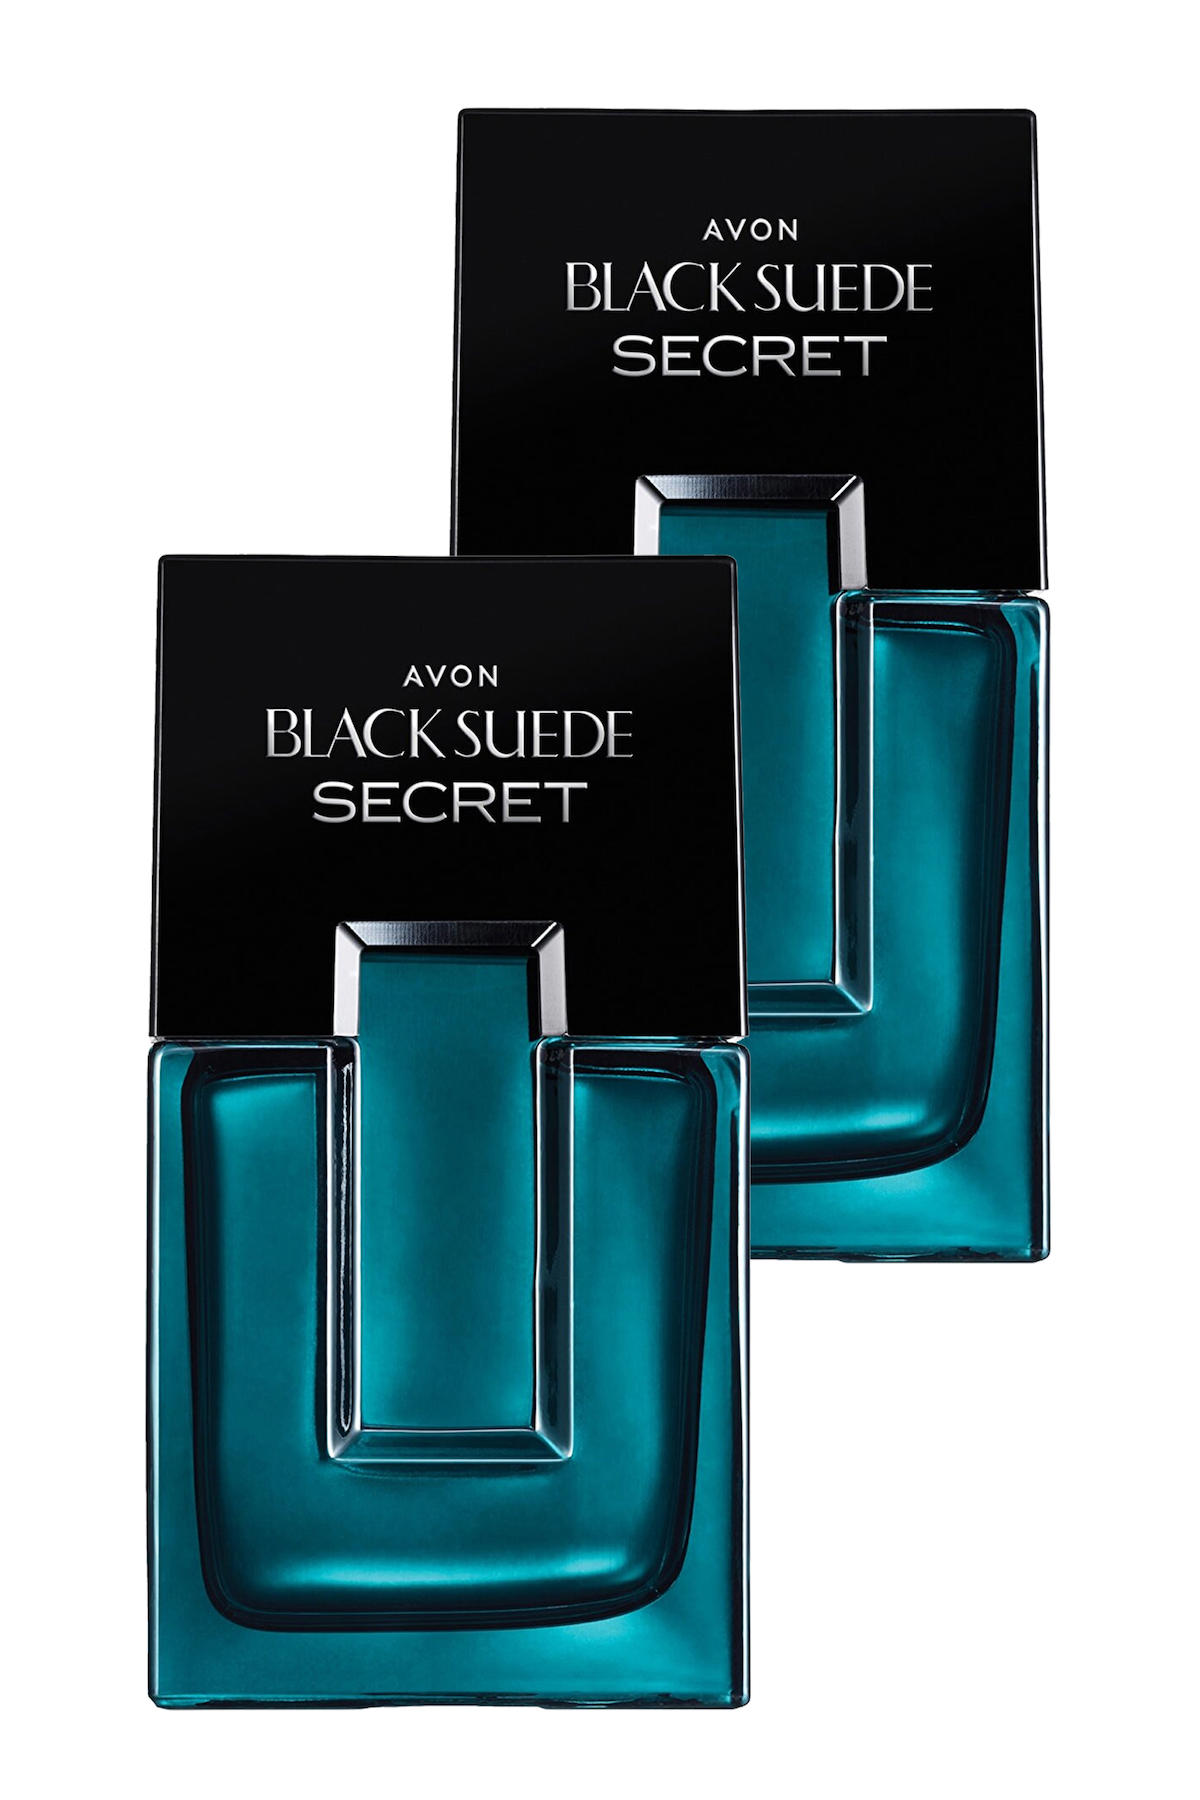 Avon Black Suede Secret EDT Aromatik Erkek Parfüm 2x75 ml